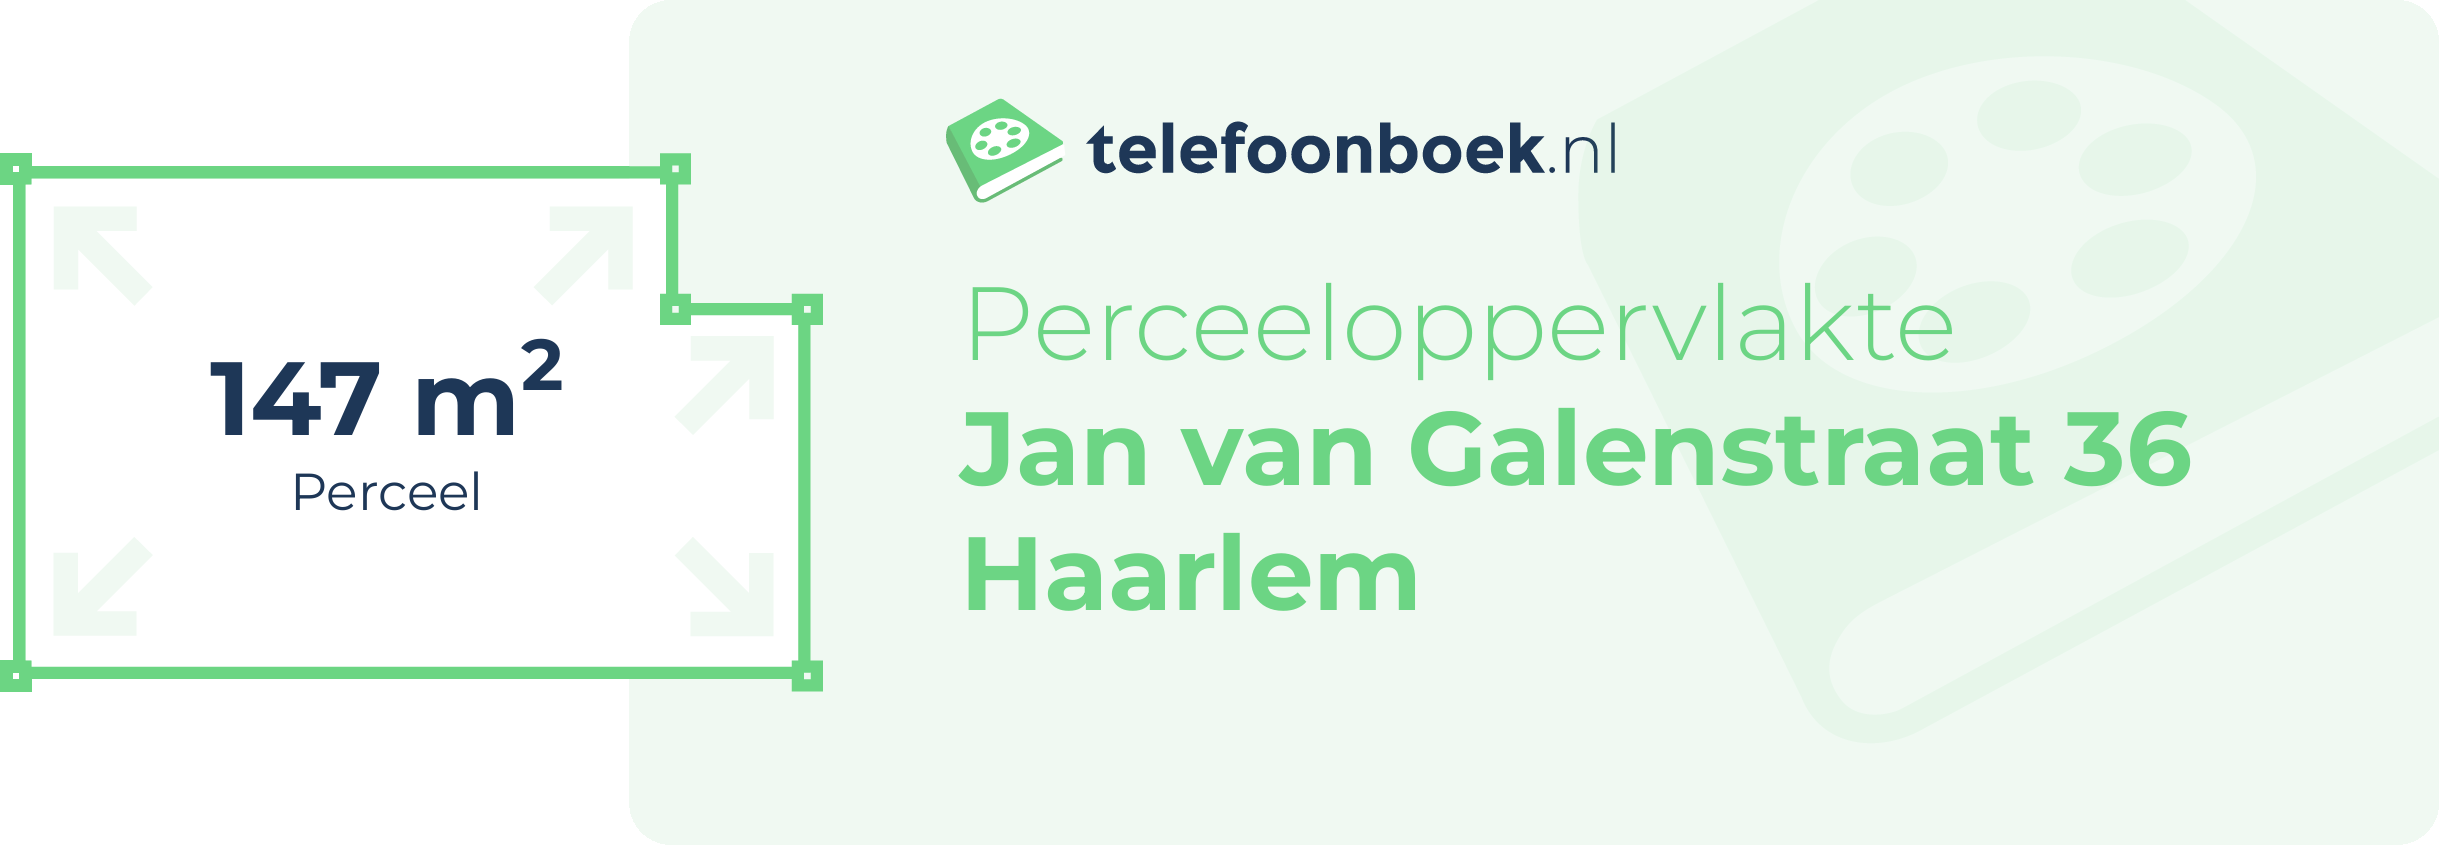 Perceeloppervlakte Jan Van Galenstraat 36 Haarlem